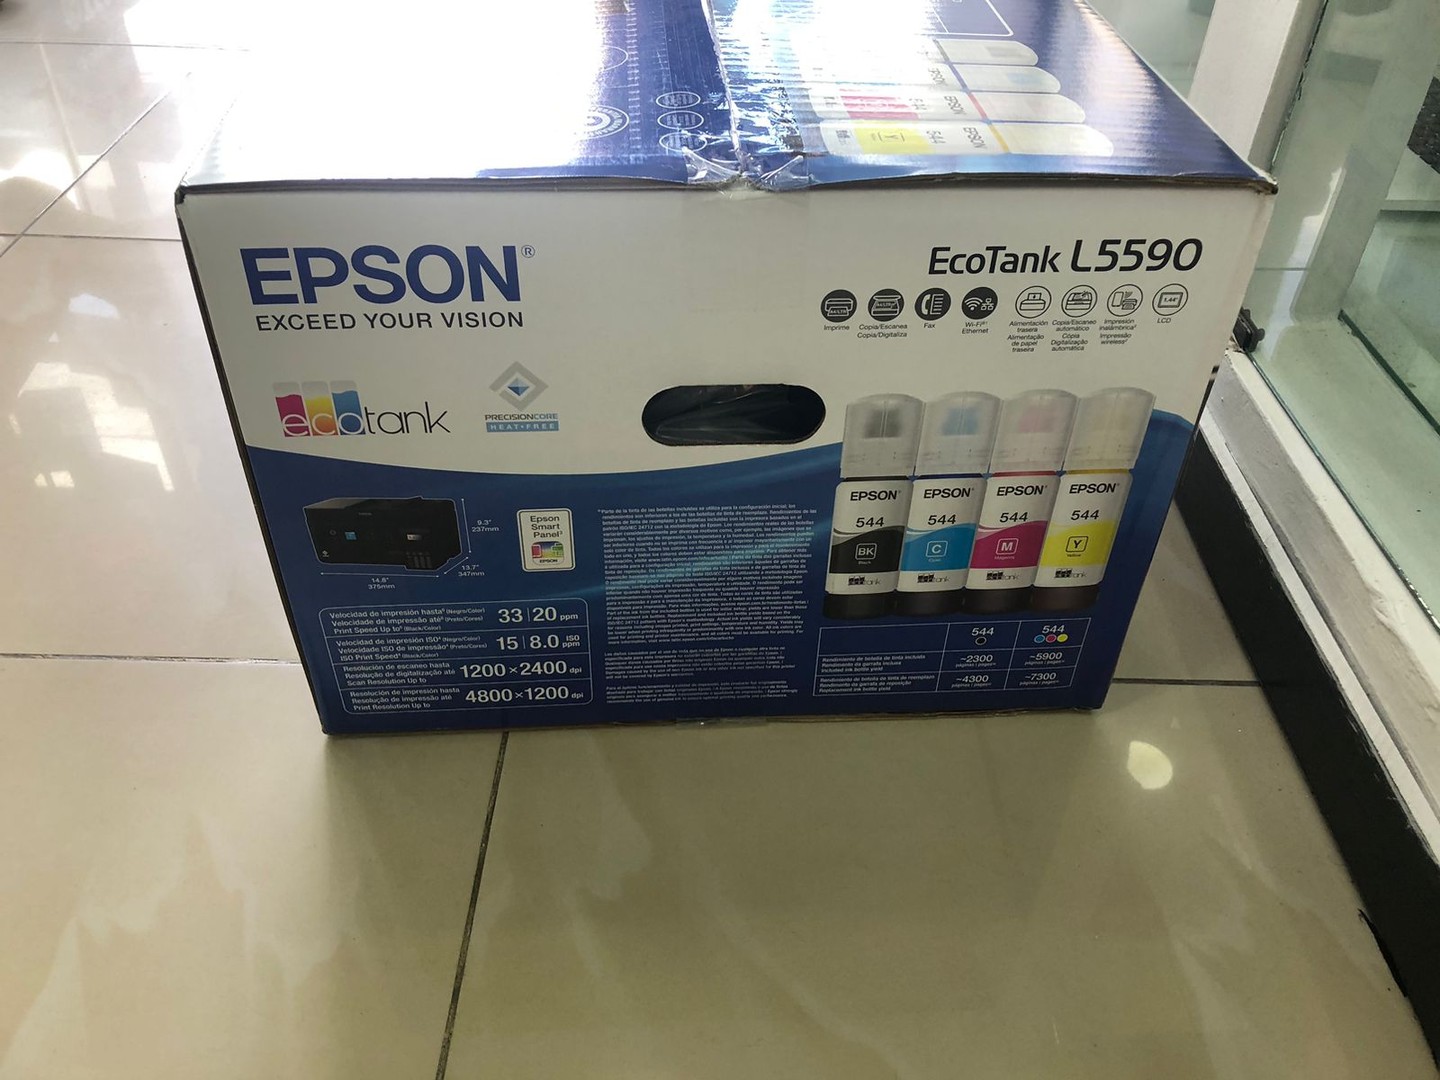 impresoras y scanners - OFERTA Impresora Epson L5590 a WIFI y USB, Multifuncional con bandeja ADF 6